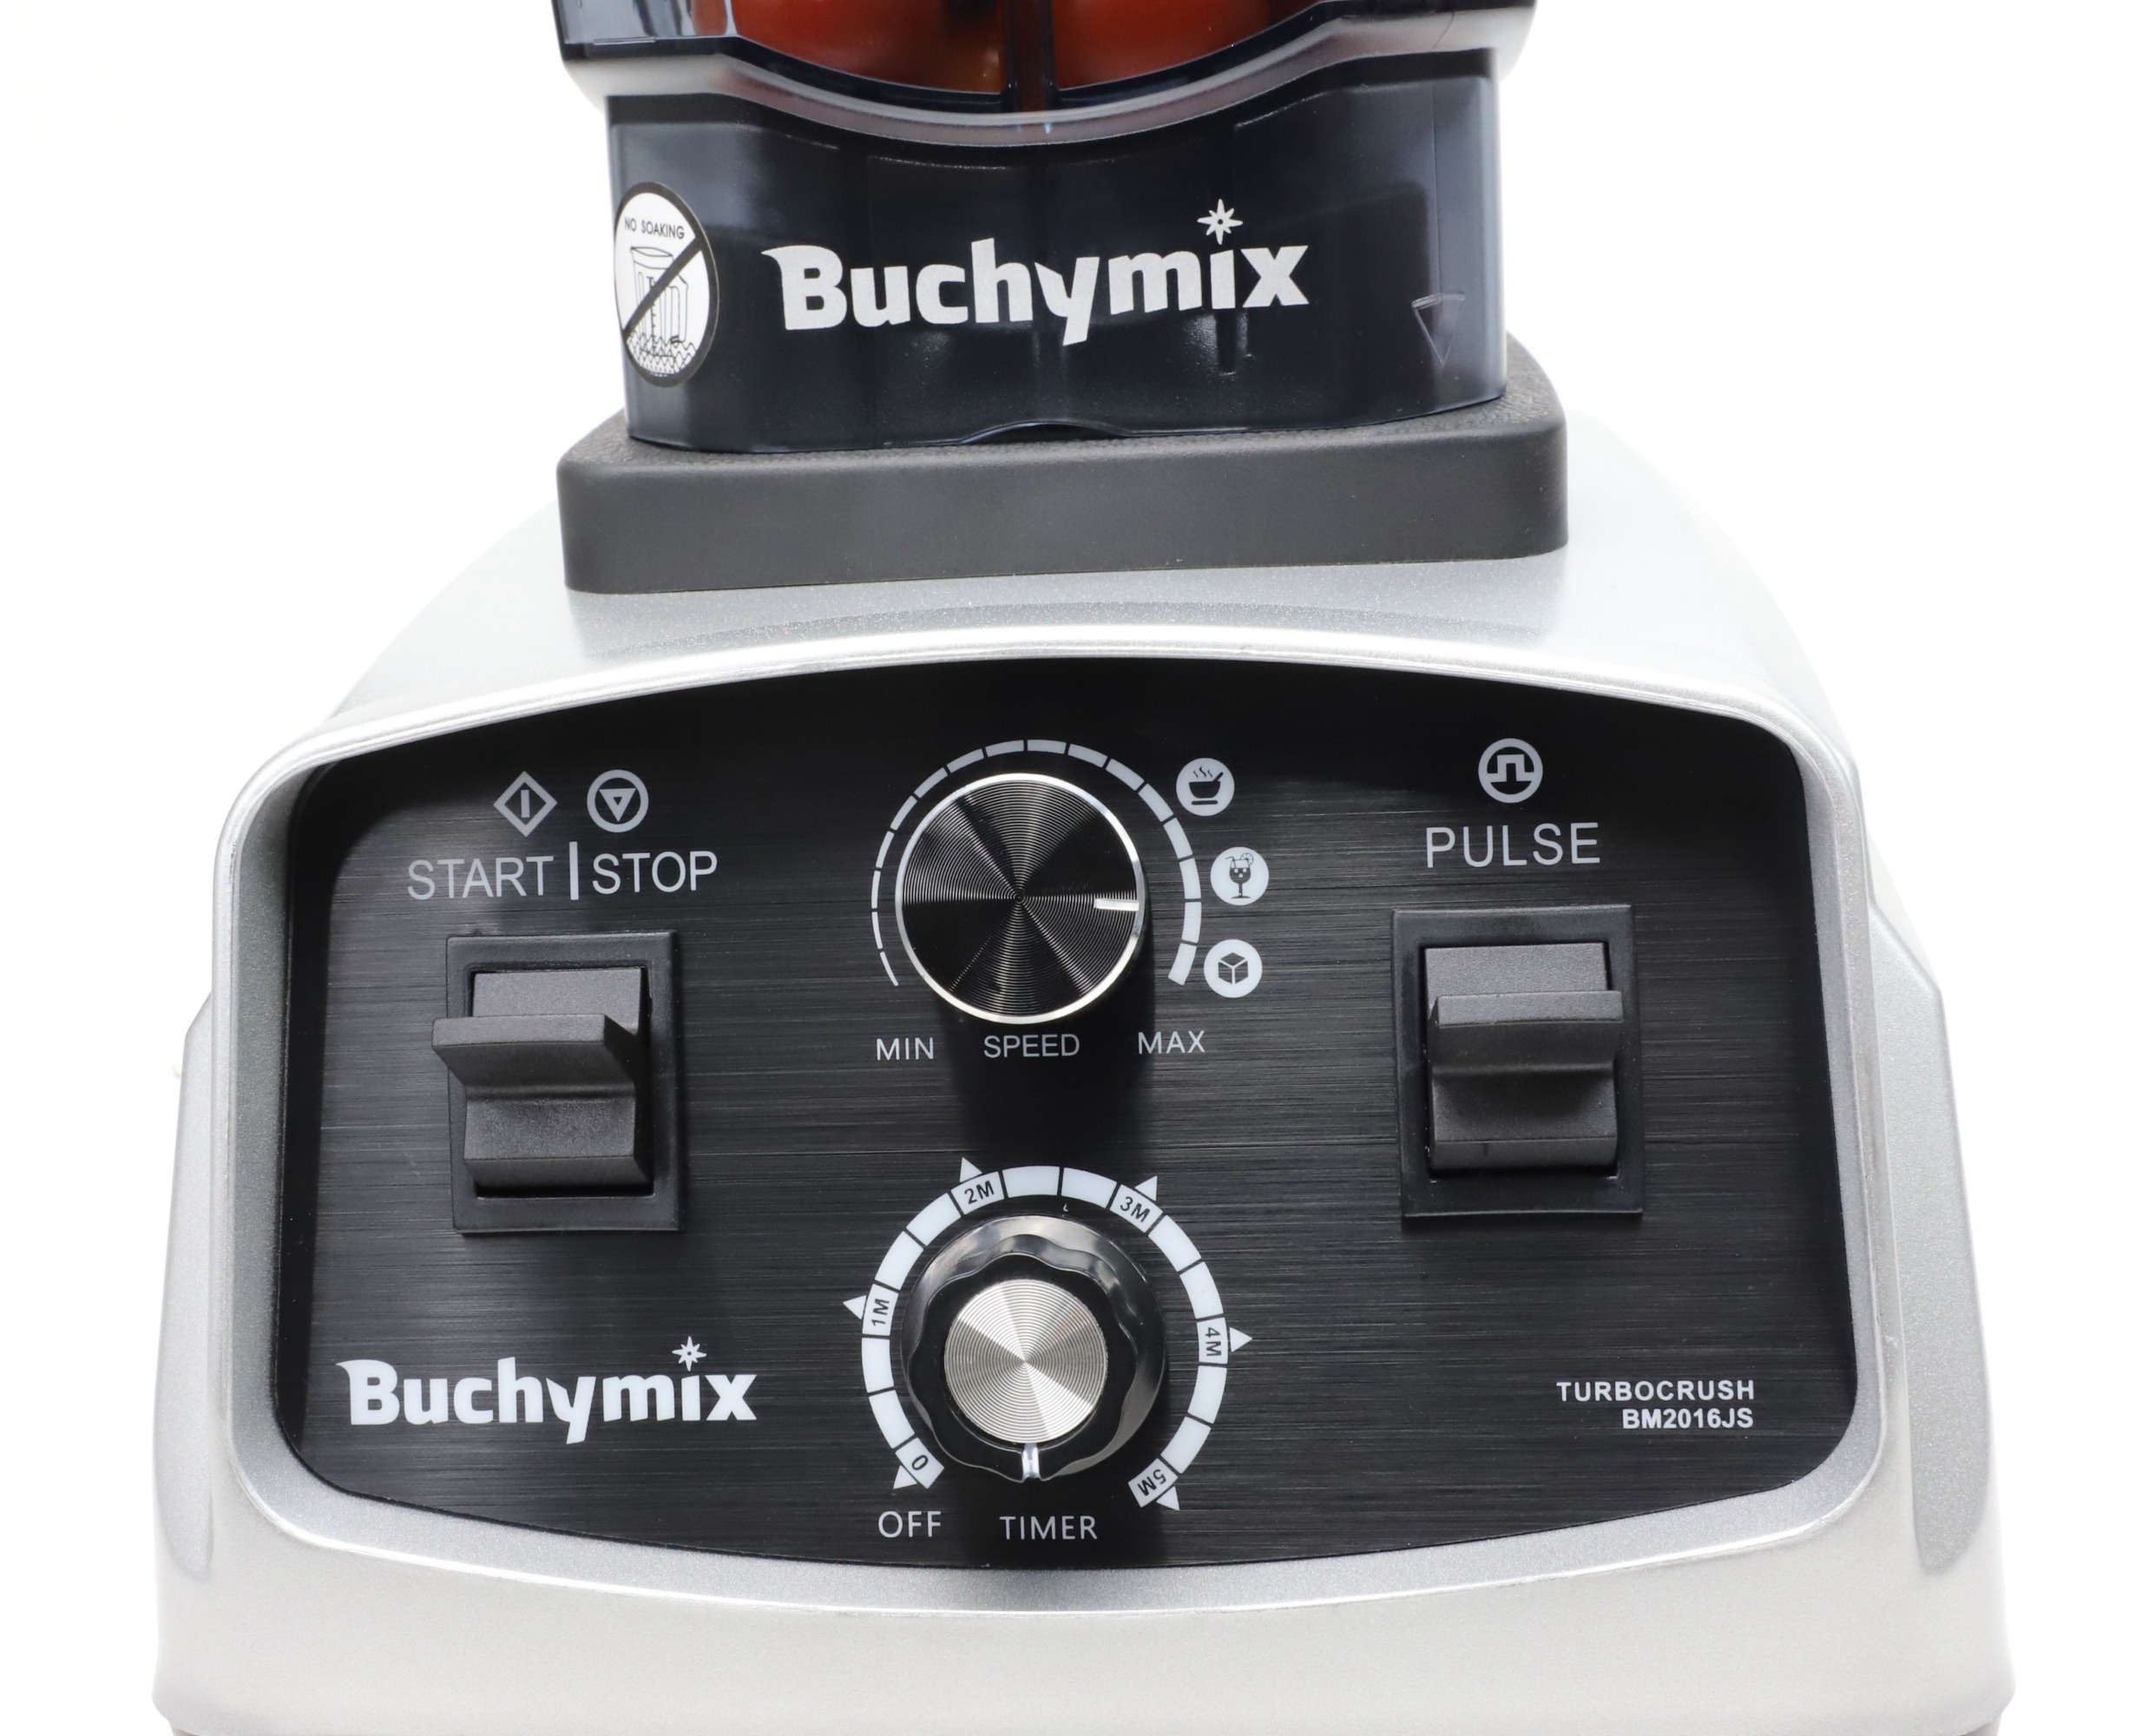 Buchymix High Speed Blender in Wuse - Kitchen Appliances, Amaechi